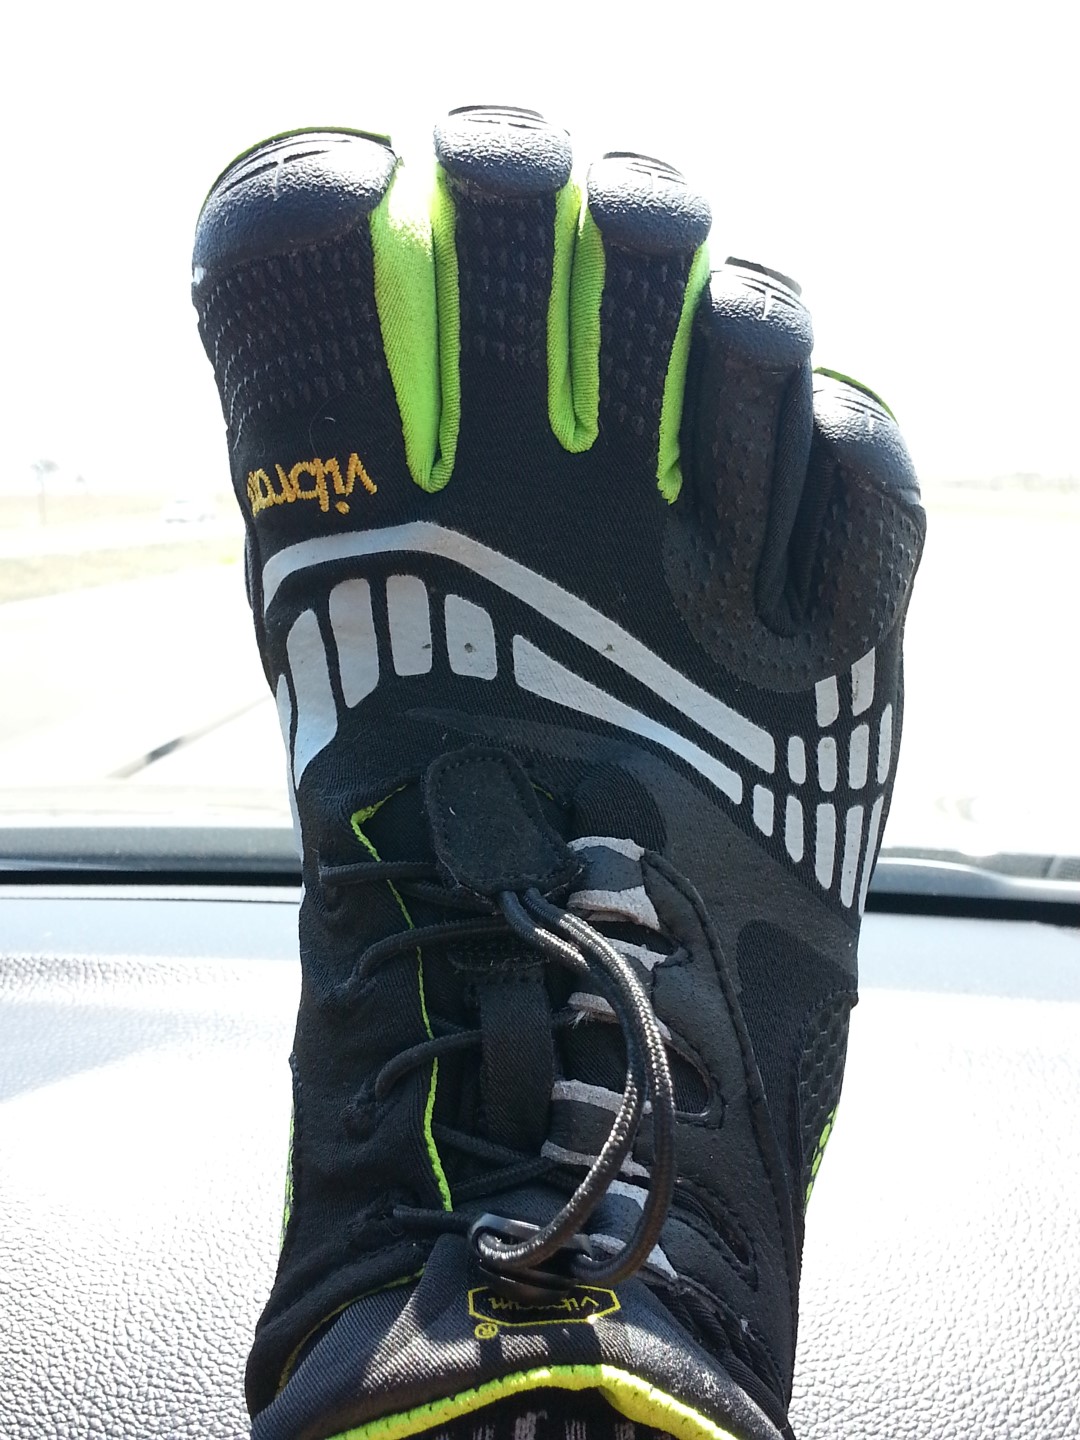 My running shoe of choice.